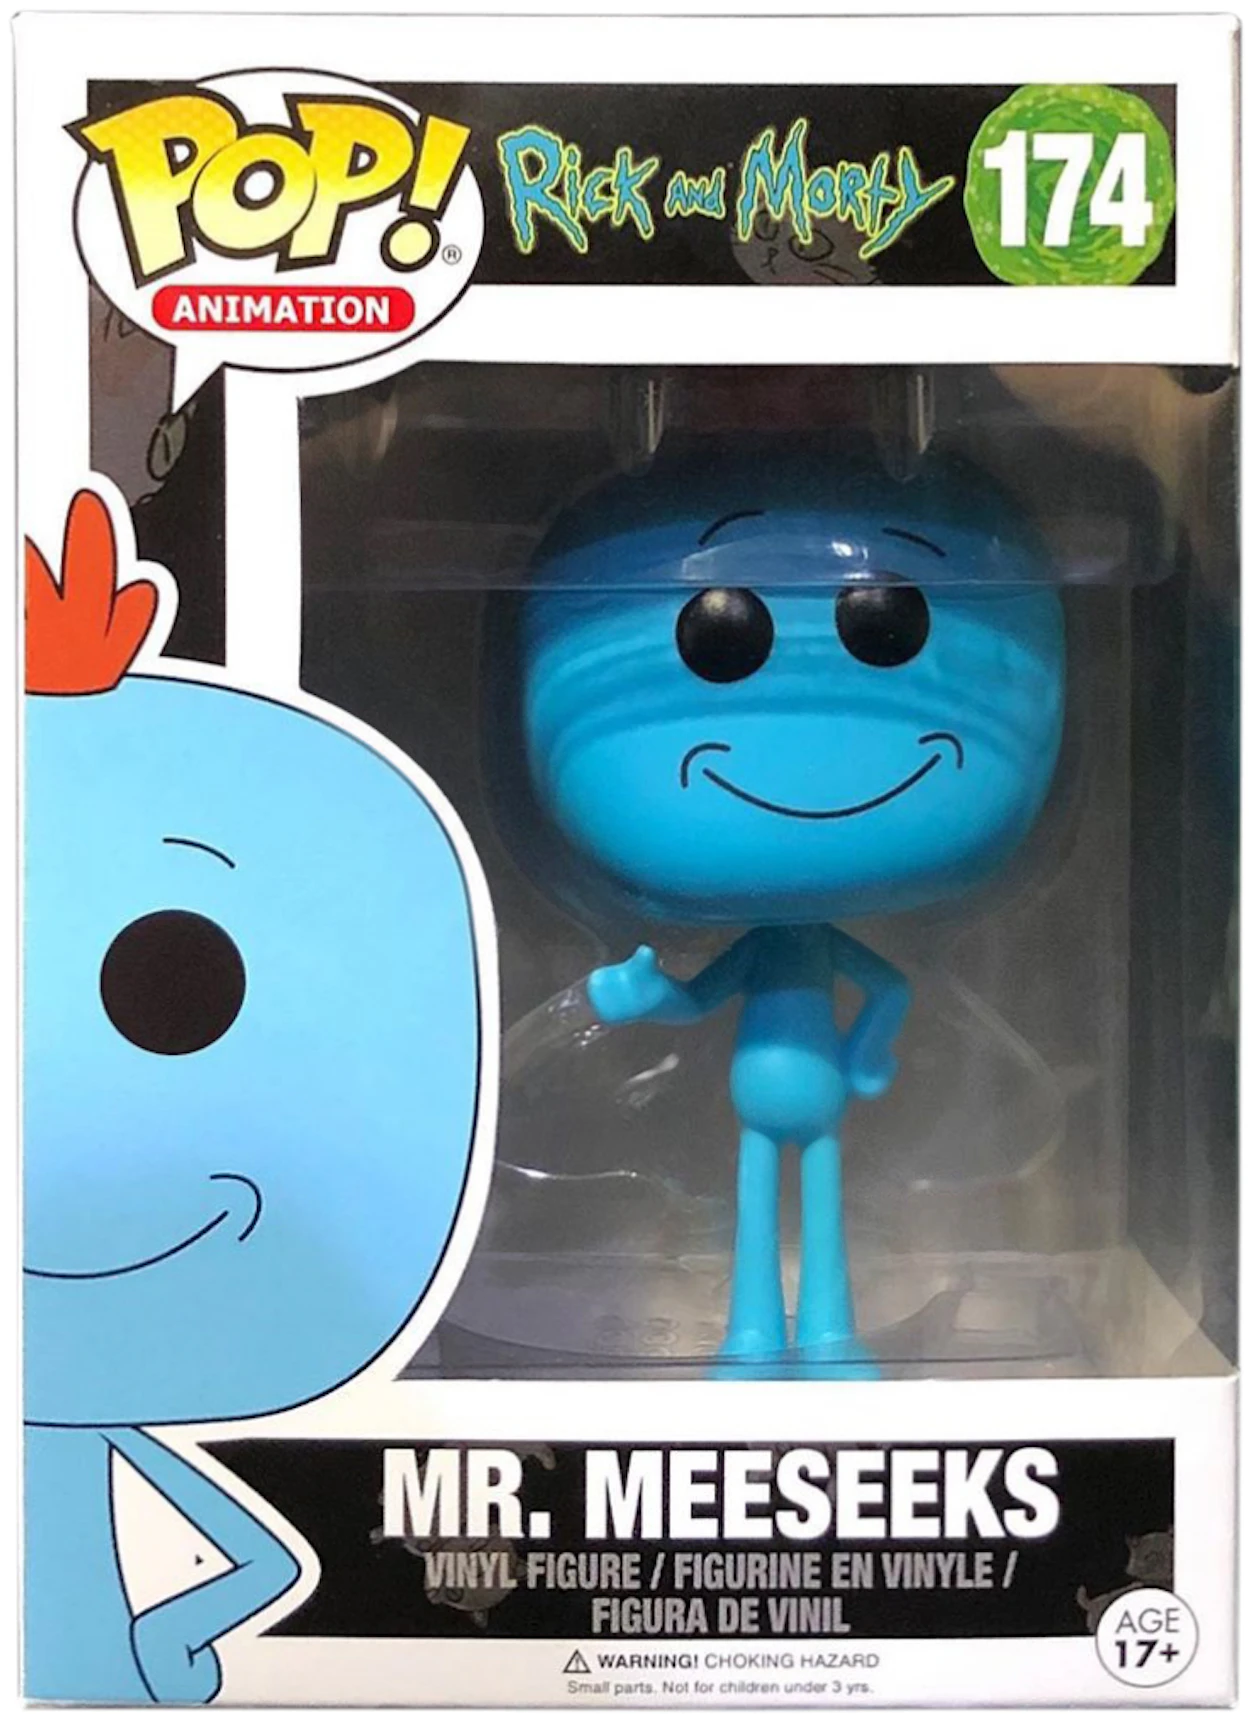 Empuje hacia abajo Carretilla Listo Funko Pop! Animation Rick and Morty Mr. Meeseeks Figure #174 - ES